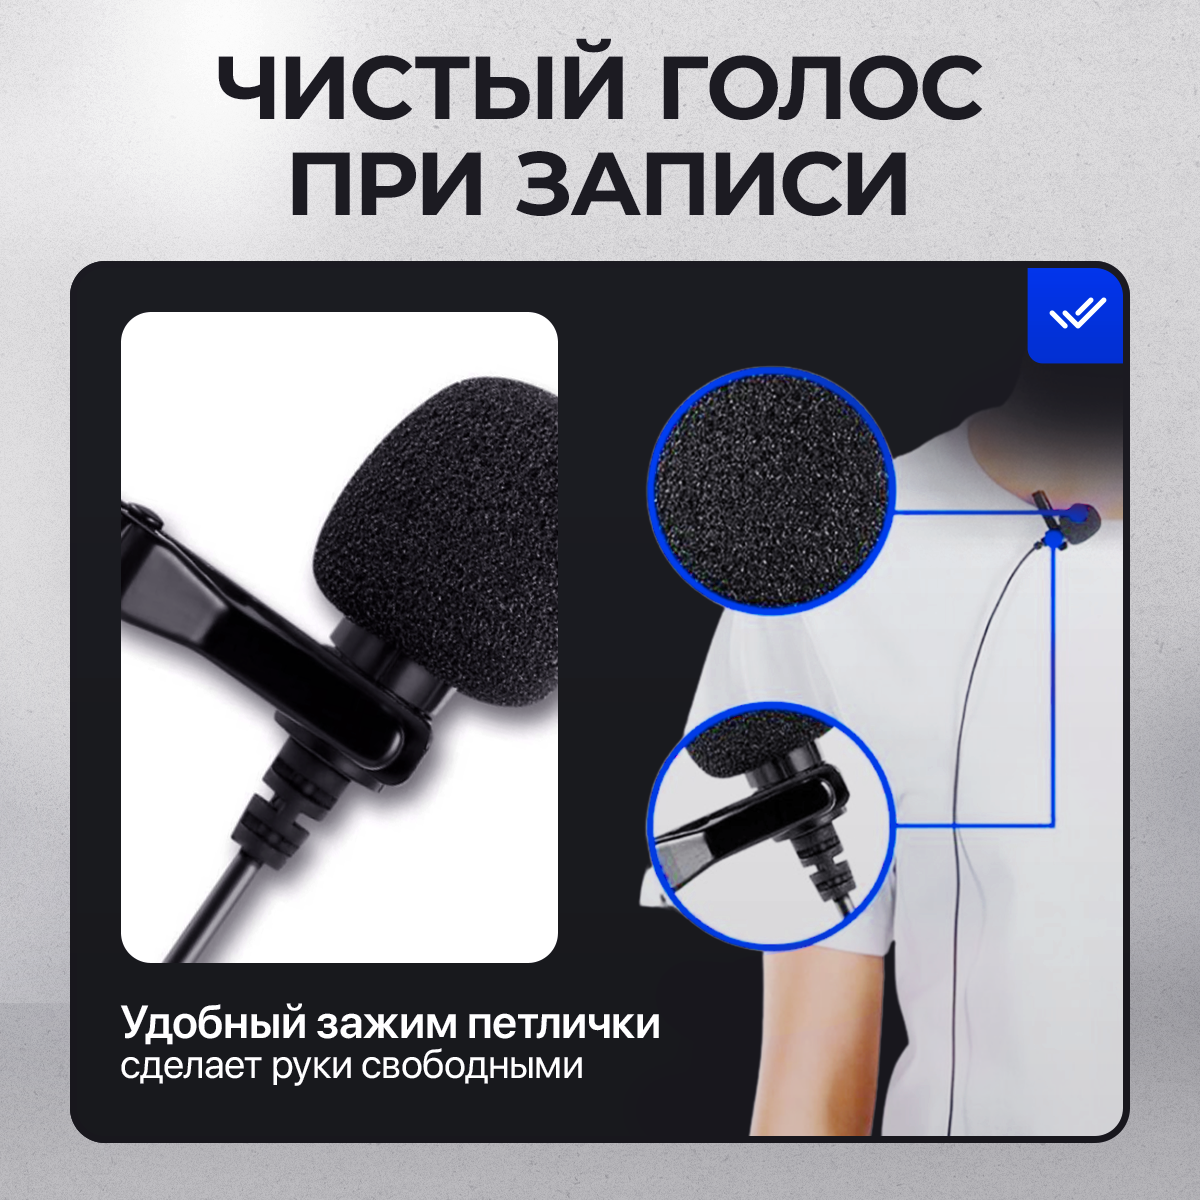 Микрофон петличный с ветрозащитой 3.5 мм. SMARTLOVER. Для камеры, iPhone, Android и компьютера